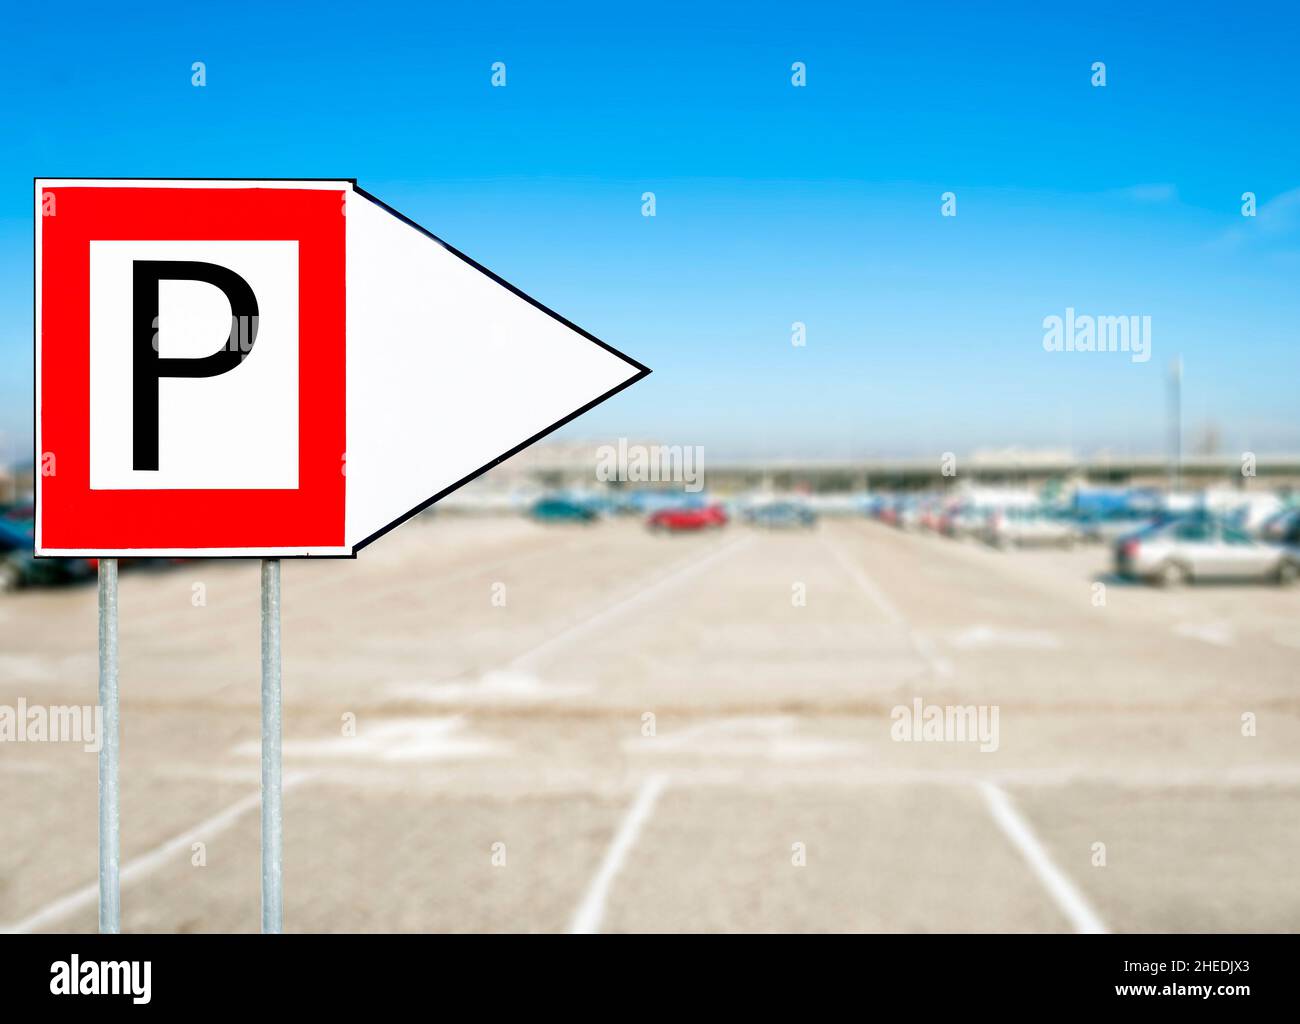 Rotes Parkschild mit Pfeil, der mit verschwommenen Autos im Hintergrund  zeigt Stockfotografie - Alamy